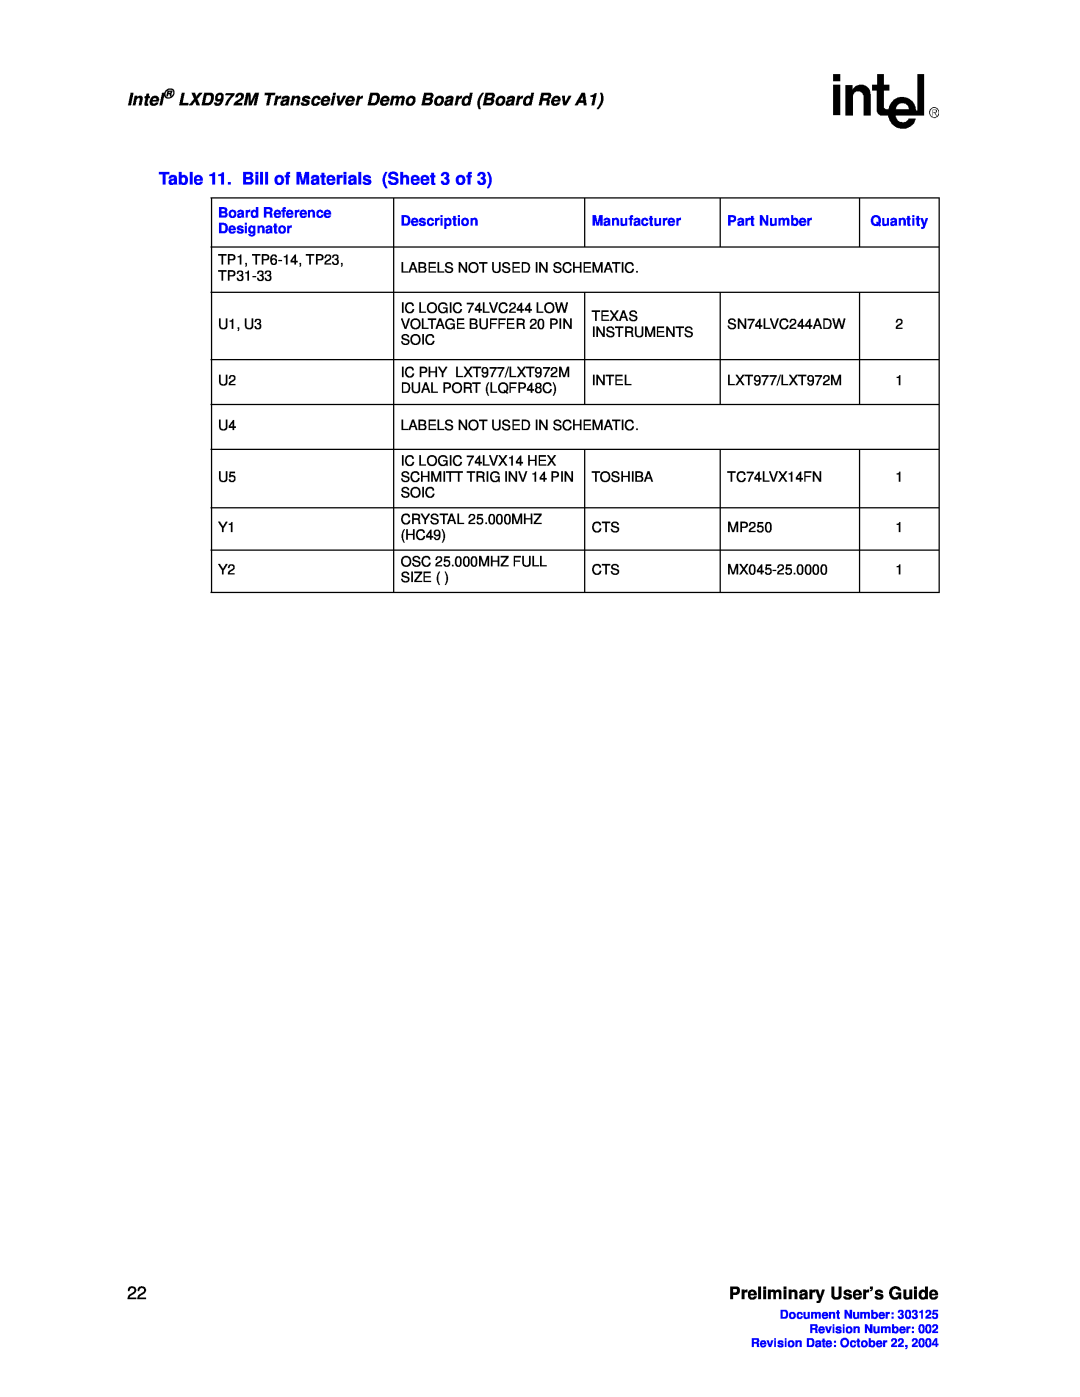 Intel manual Intel LXD972M Transceiver Demo Board Board Rev A1, Preliminary User’s Guide, Board Reference, Description 